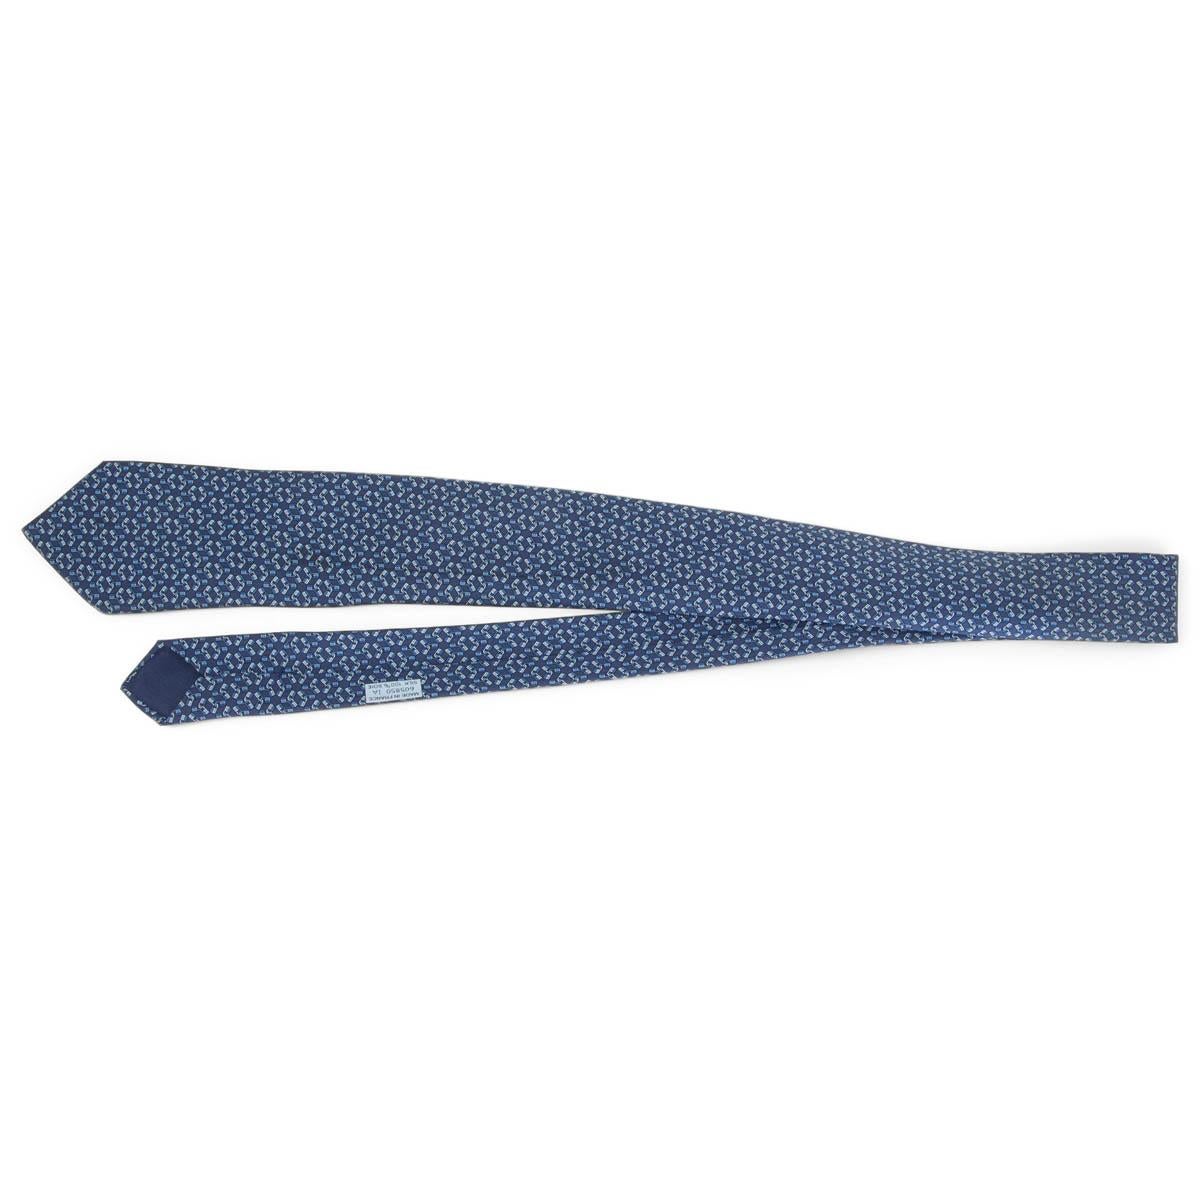 cravate bleu marine 100% authentique Hermès conçue en soie (100%) avec le détail 'Lock'H' sur toute la surface. A été porté et est en excellent état. Pas de boîte.

Mesures
Largeur	8cm (3.1in)
Longueur	150cm (58.5in)

Toutes nos annonces comprennent